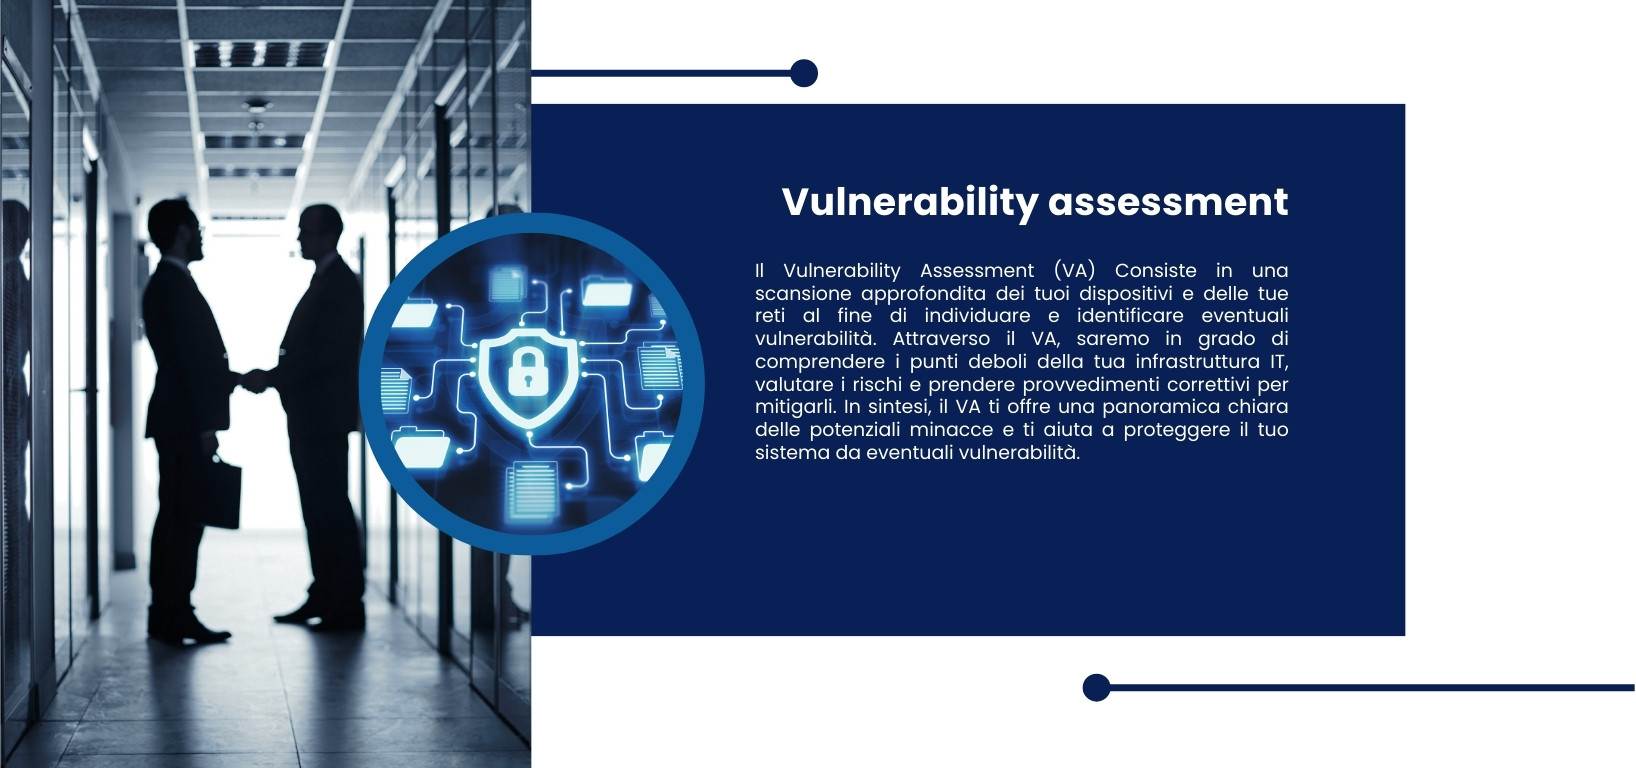 Il Vulnerability Assessment (VA) Consiste in una scansione approfondita dei tuoi dispositivi e delle tue reti al fine di individuare e identificare eventuali vulnerabilità. Attraverso il VA, saremo in grado di comprendere i punti deboli della tua infrastruttura IT, valutare i rischi e prendere provvedimenti correttivi per mitigarli. In sintesi, il VA ti offre una panoramica chiara delle potenziali minacce e ti aiuta a proteggere il tuo sistema da eventuali vulnerabilità.